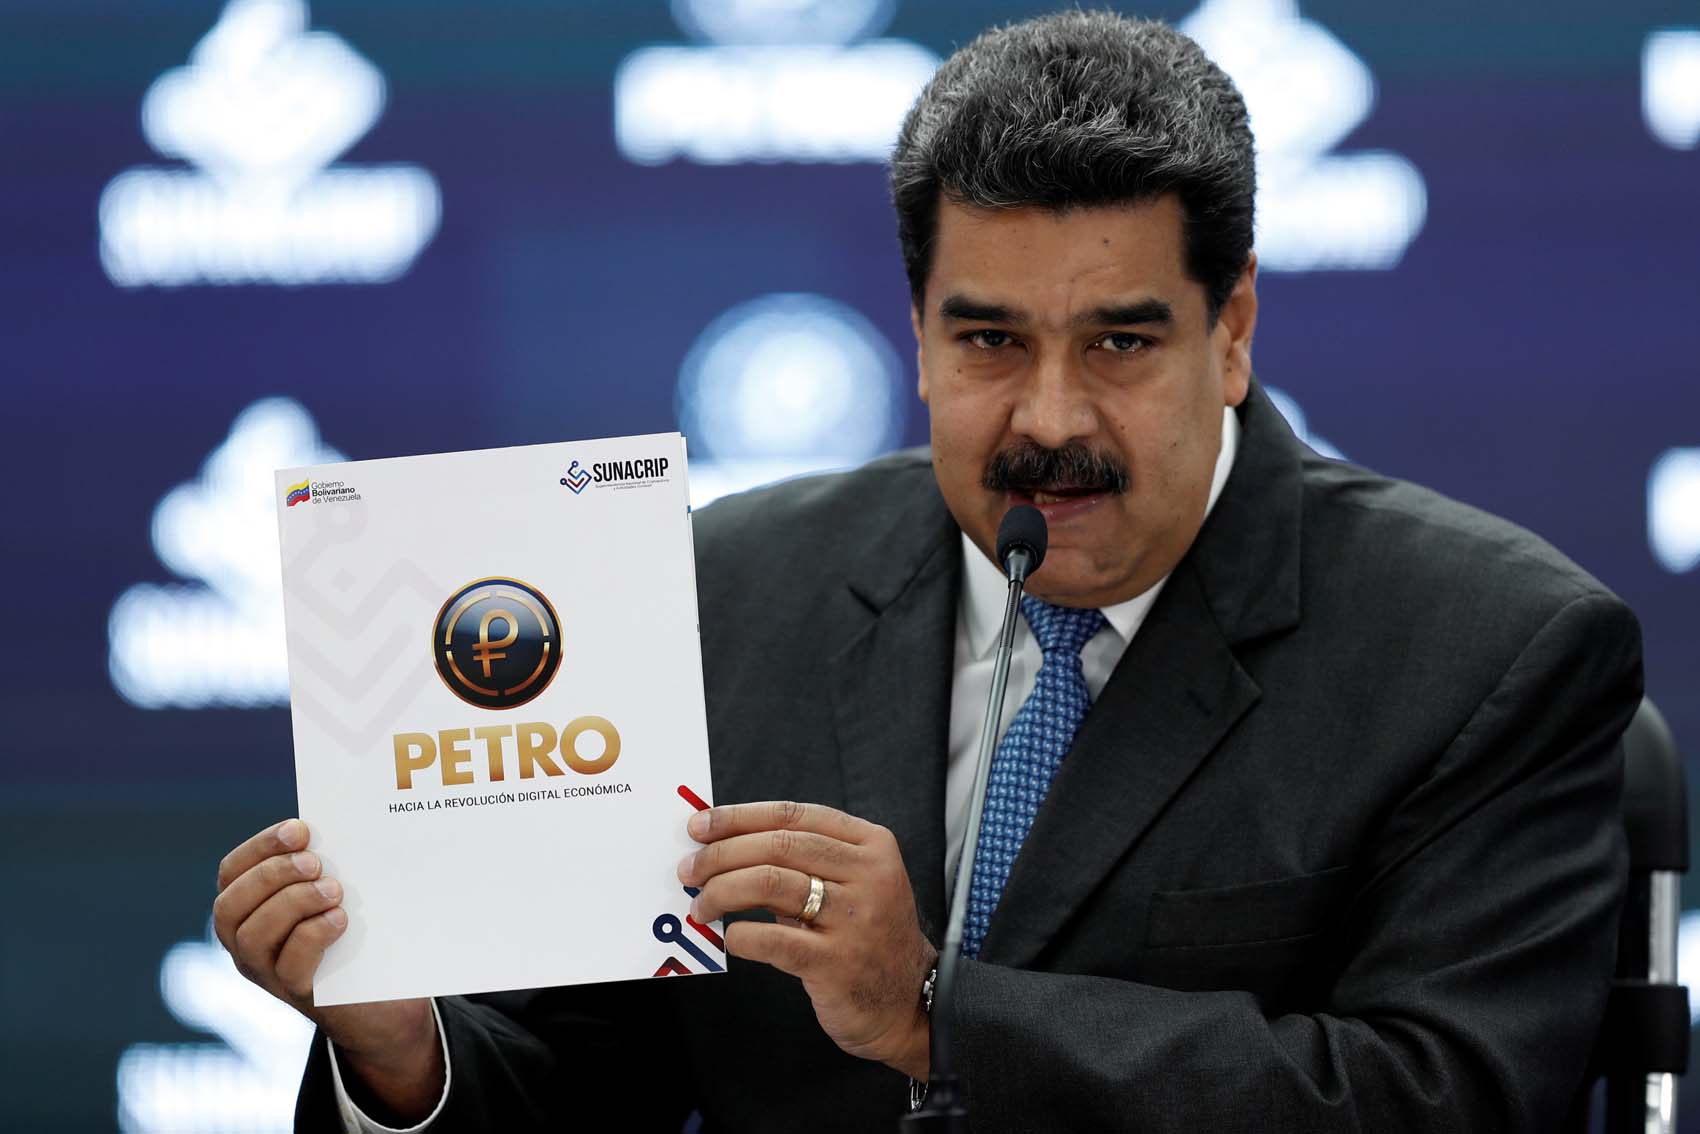 El petro sería la herramienta para hacer de Venezuela una “criptonación al estilo cubano”